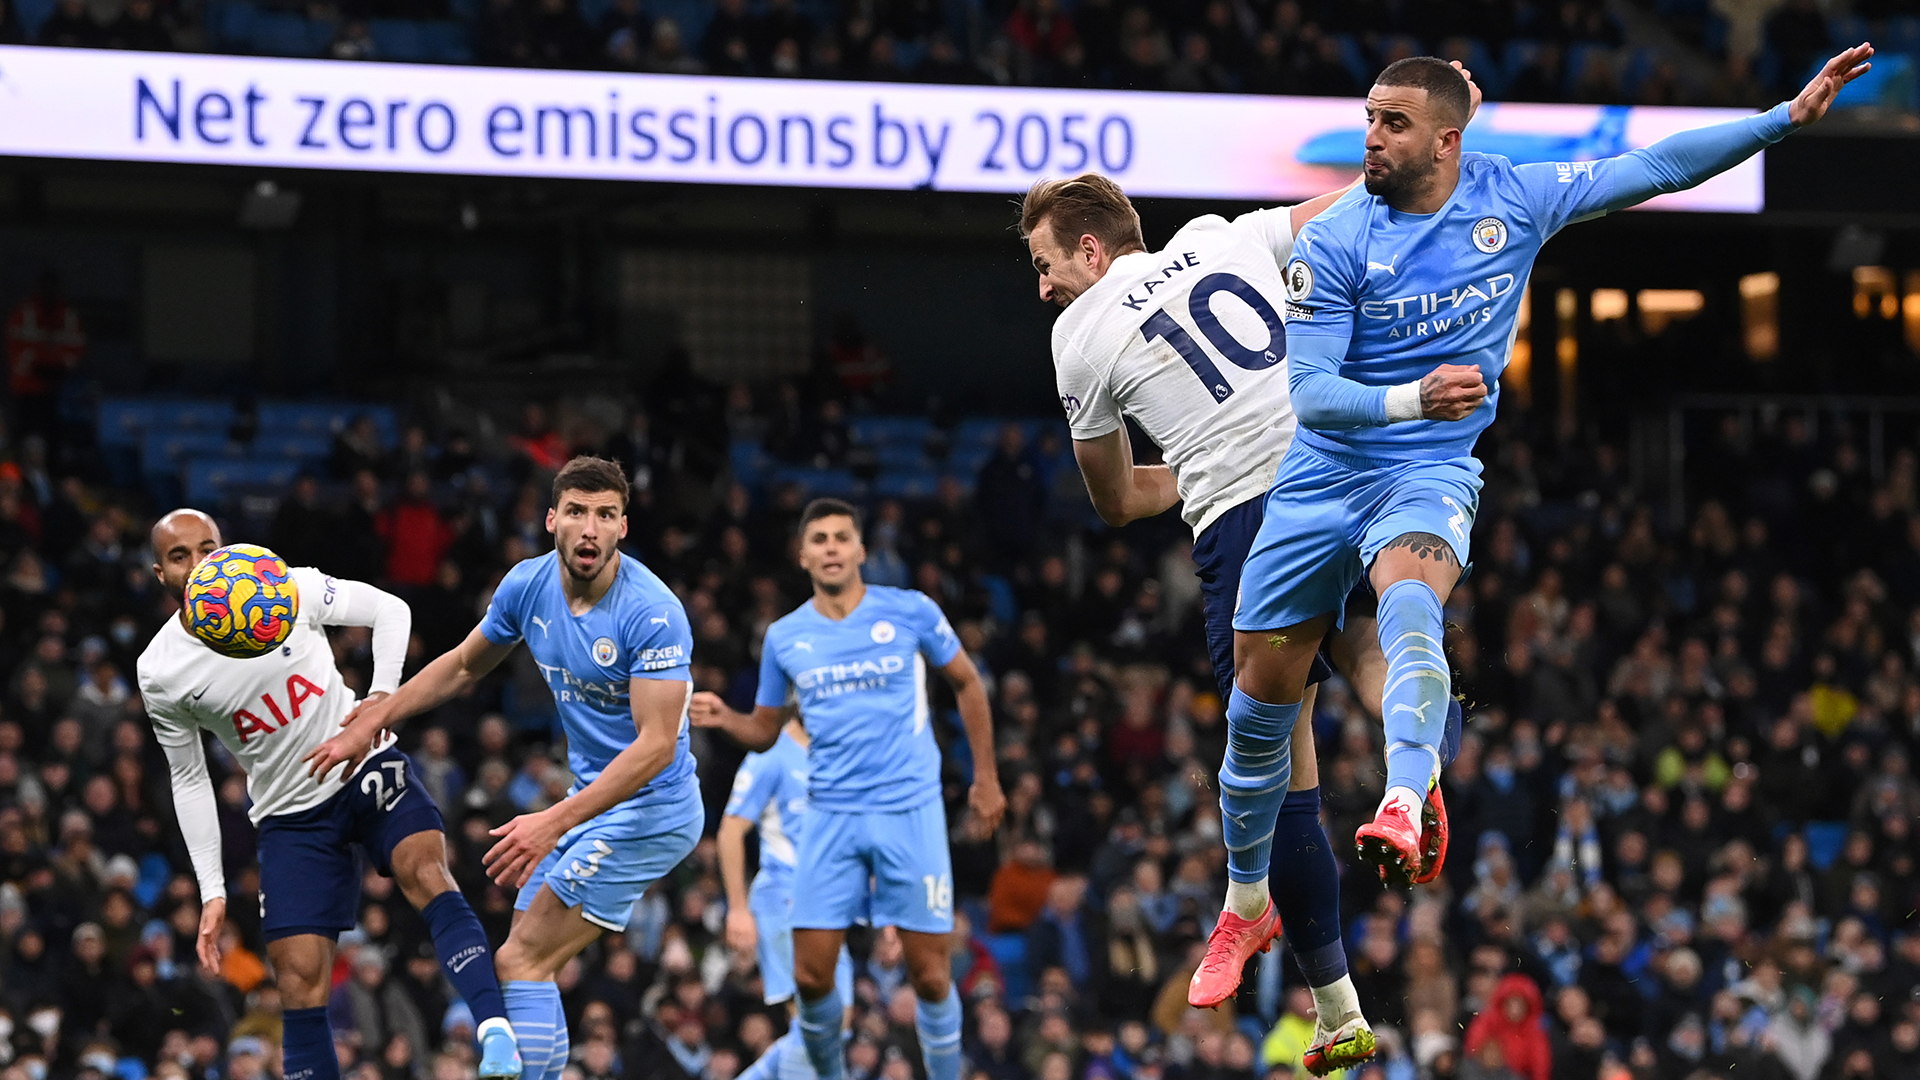 Manchester City 2-3 Tottenham Harry Kane heads in late winner for Spurs